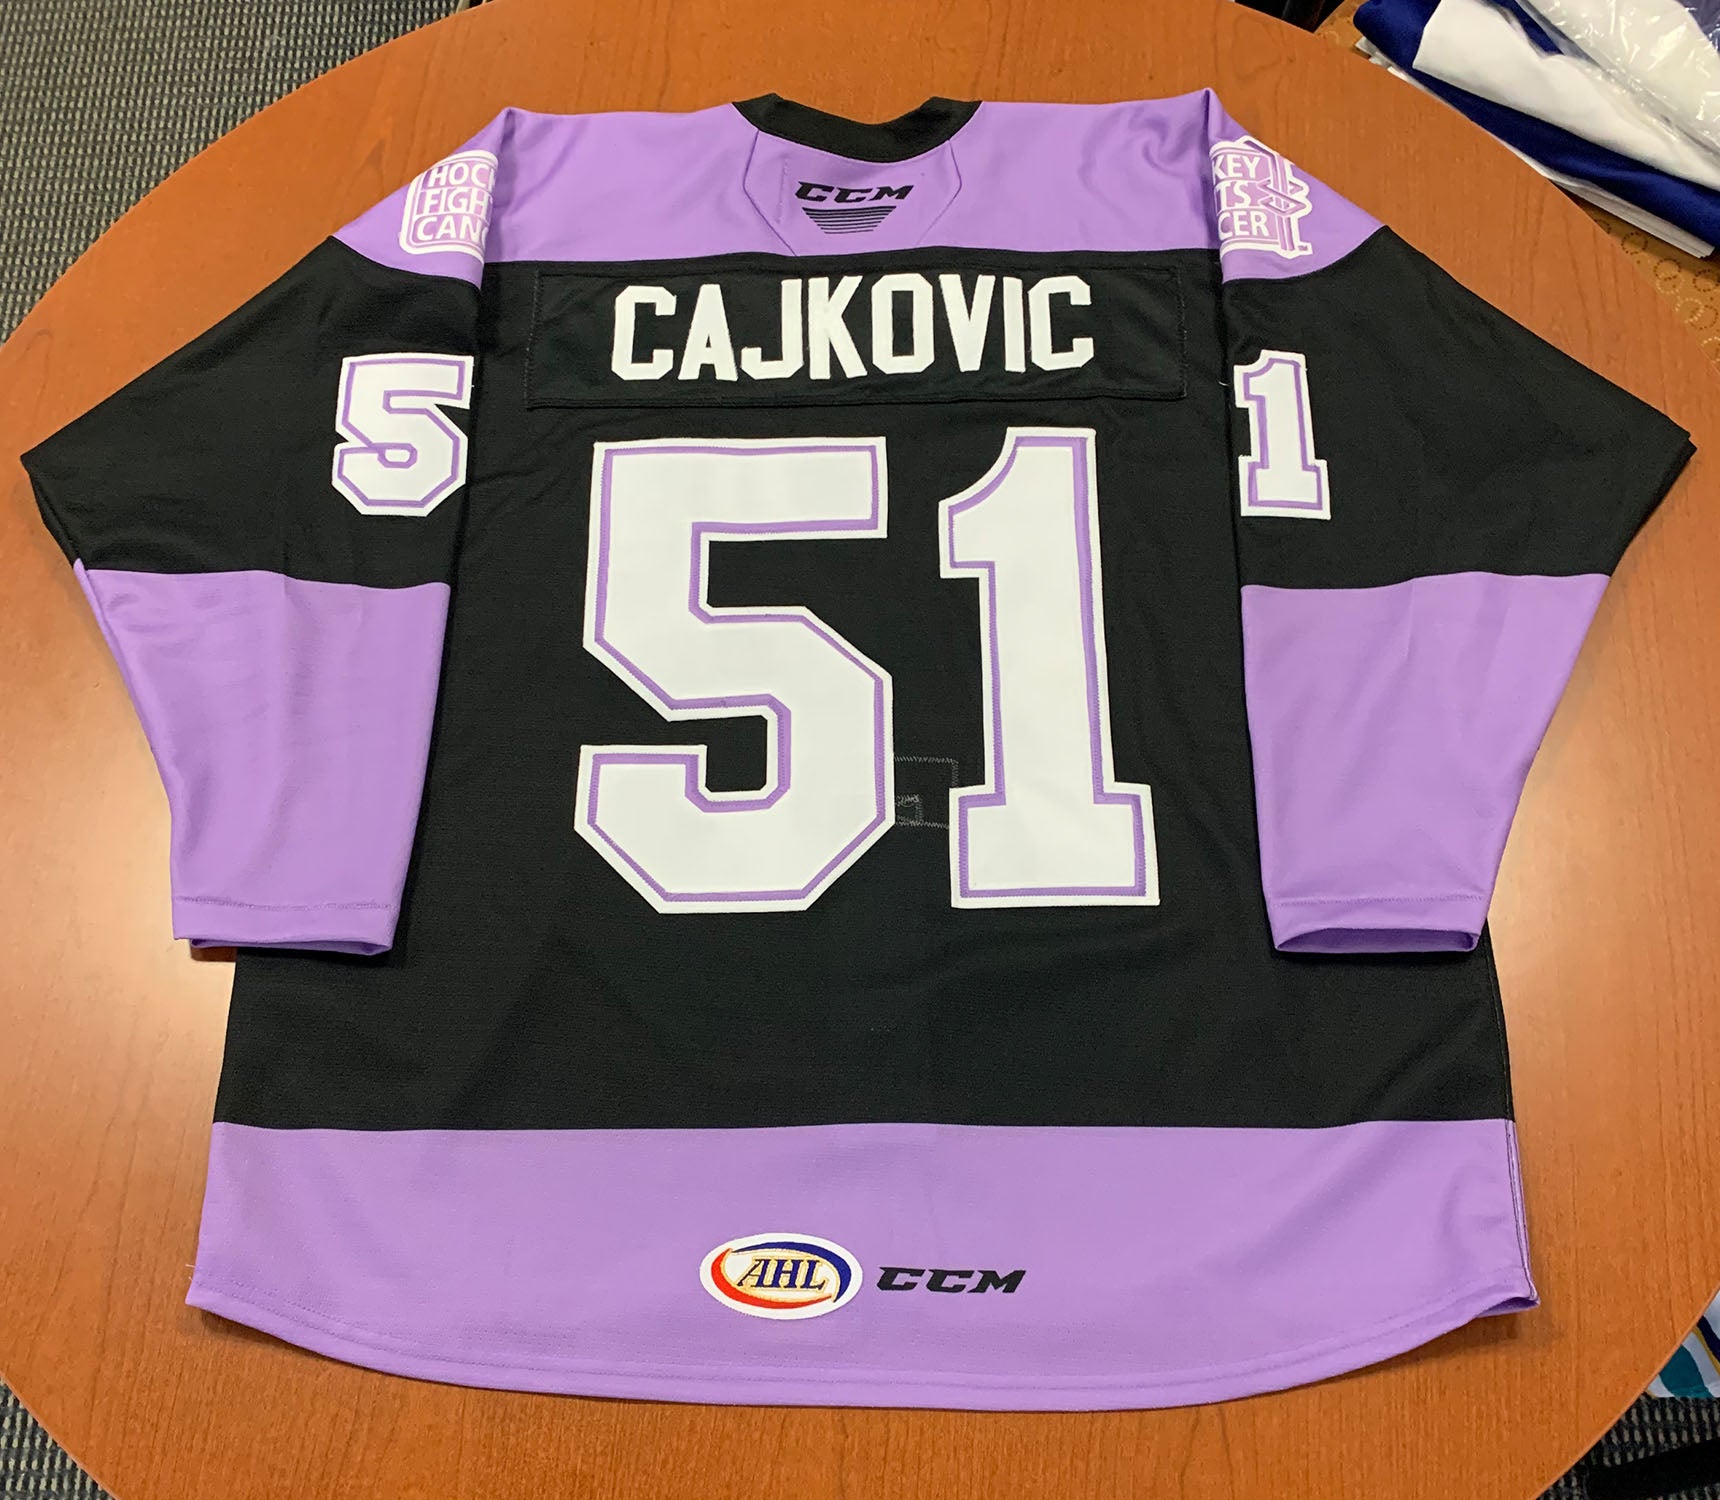 51 Max Cajkovic Hockey Fights Cancer Jersey - November 27, 2021